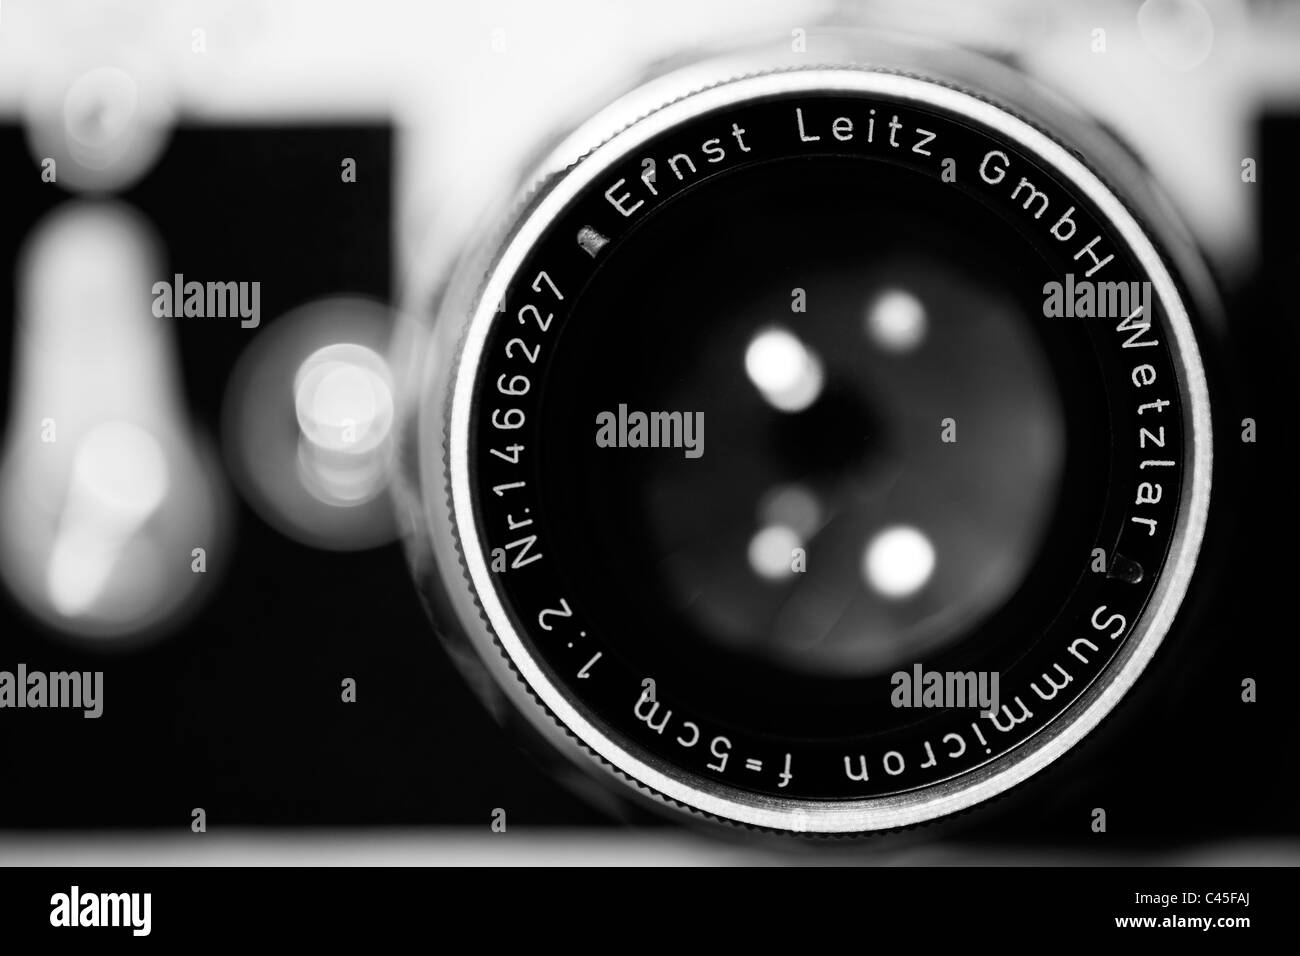 Leica M3 with Leitz Summicron lens Stock Photo